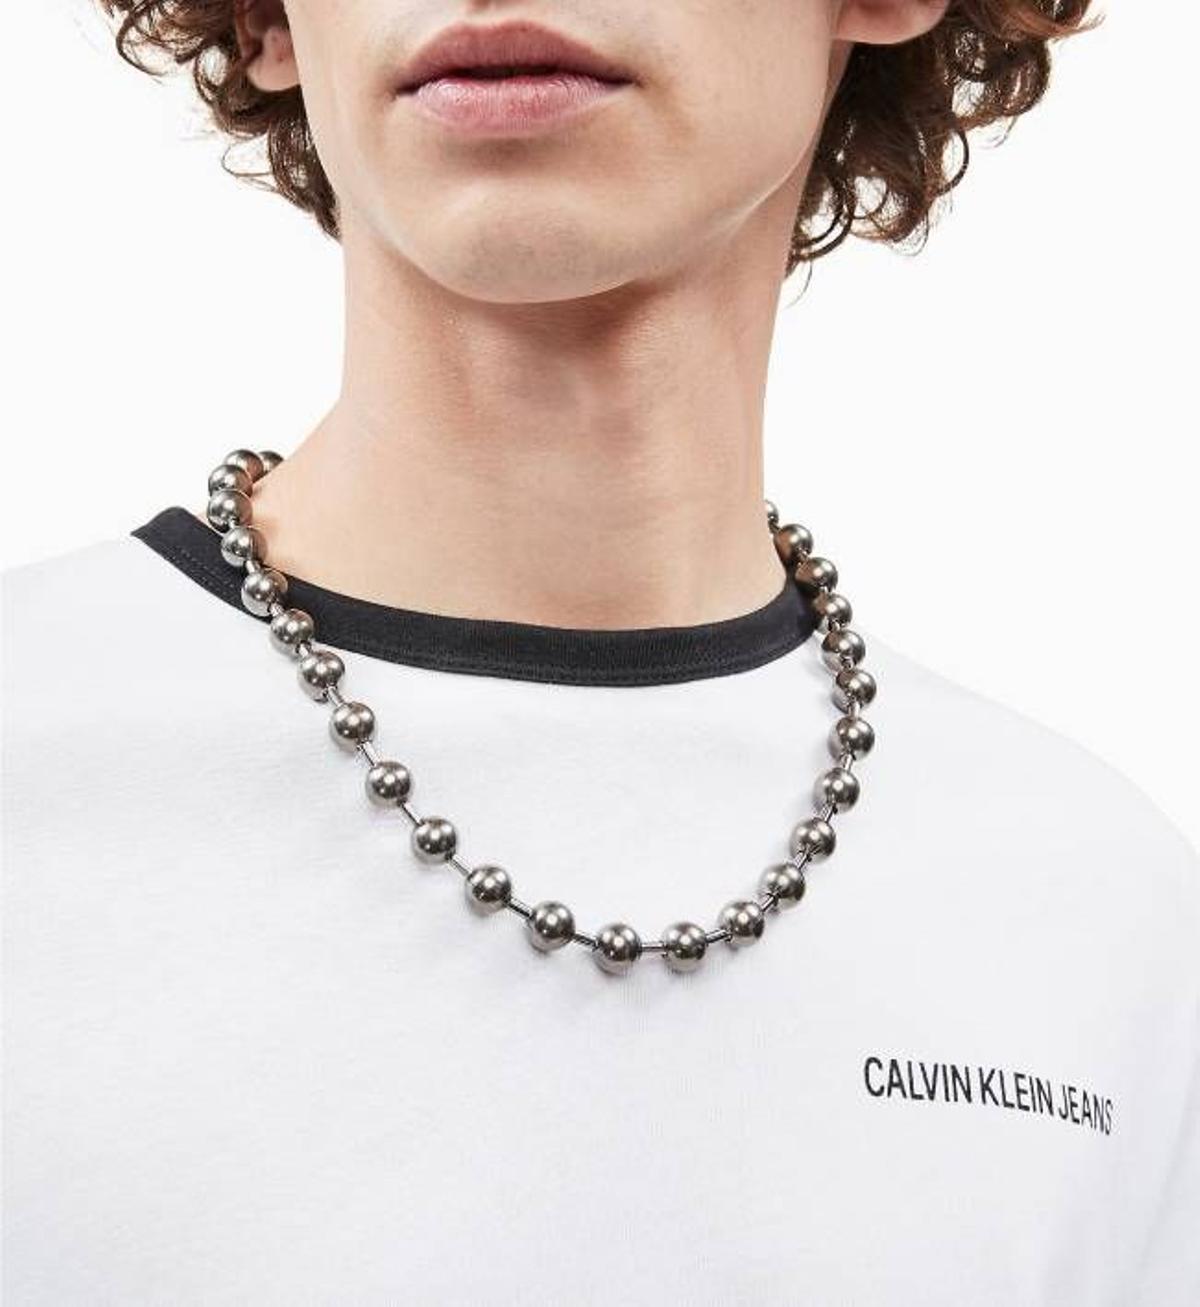 Collar unisex de acero inoxidable de Calvin Klein